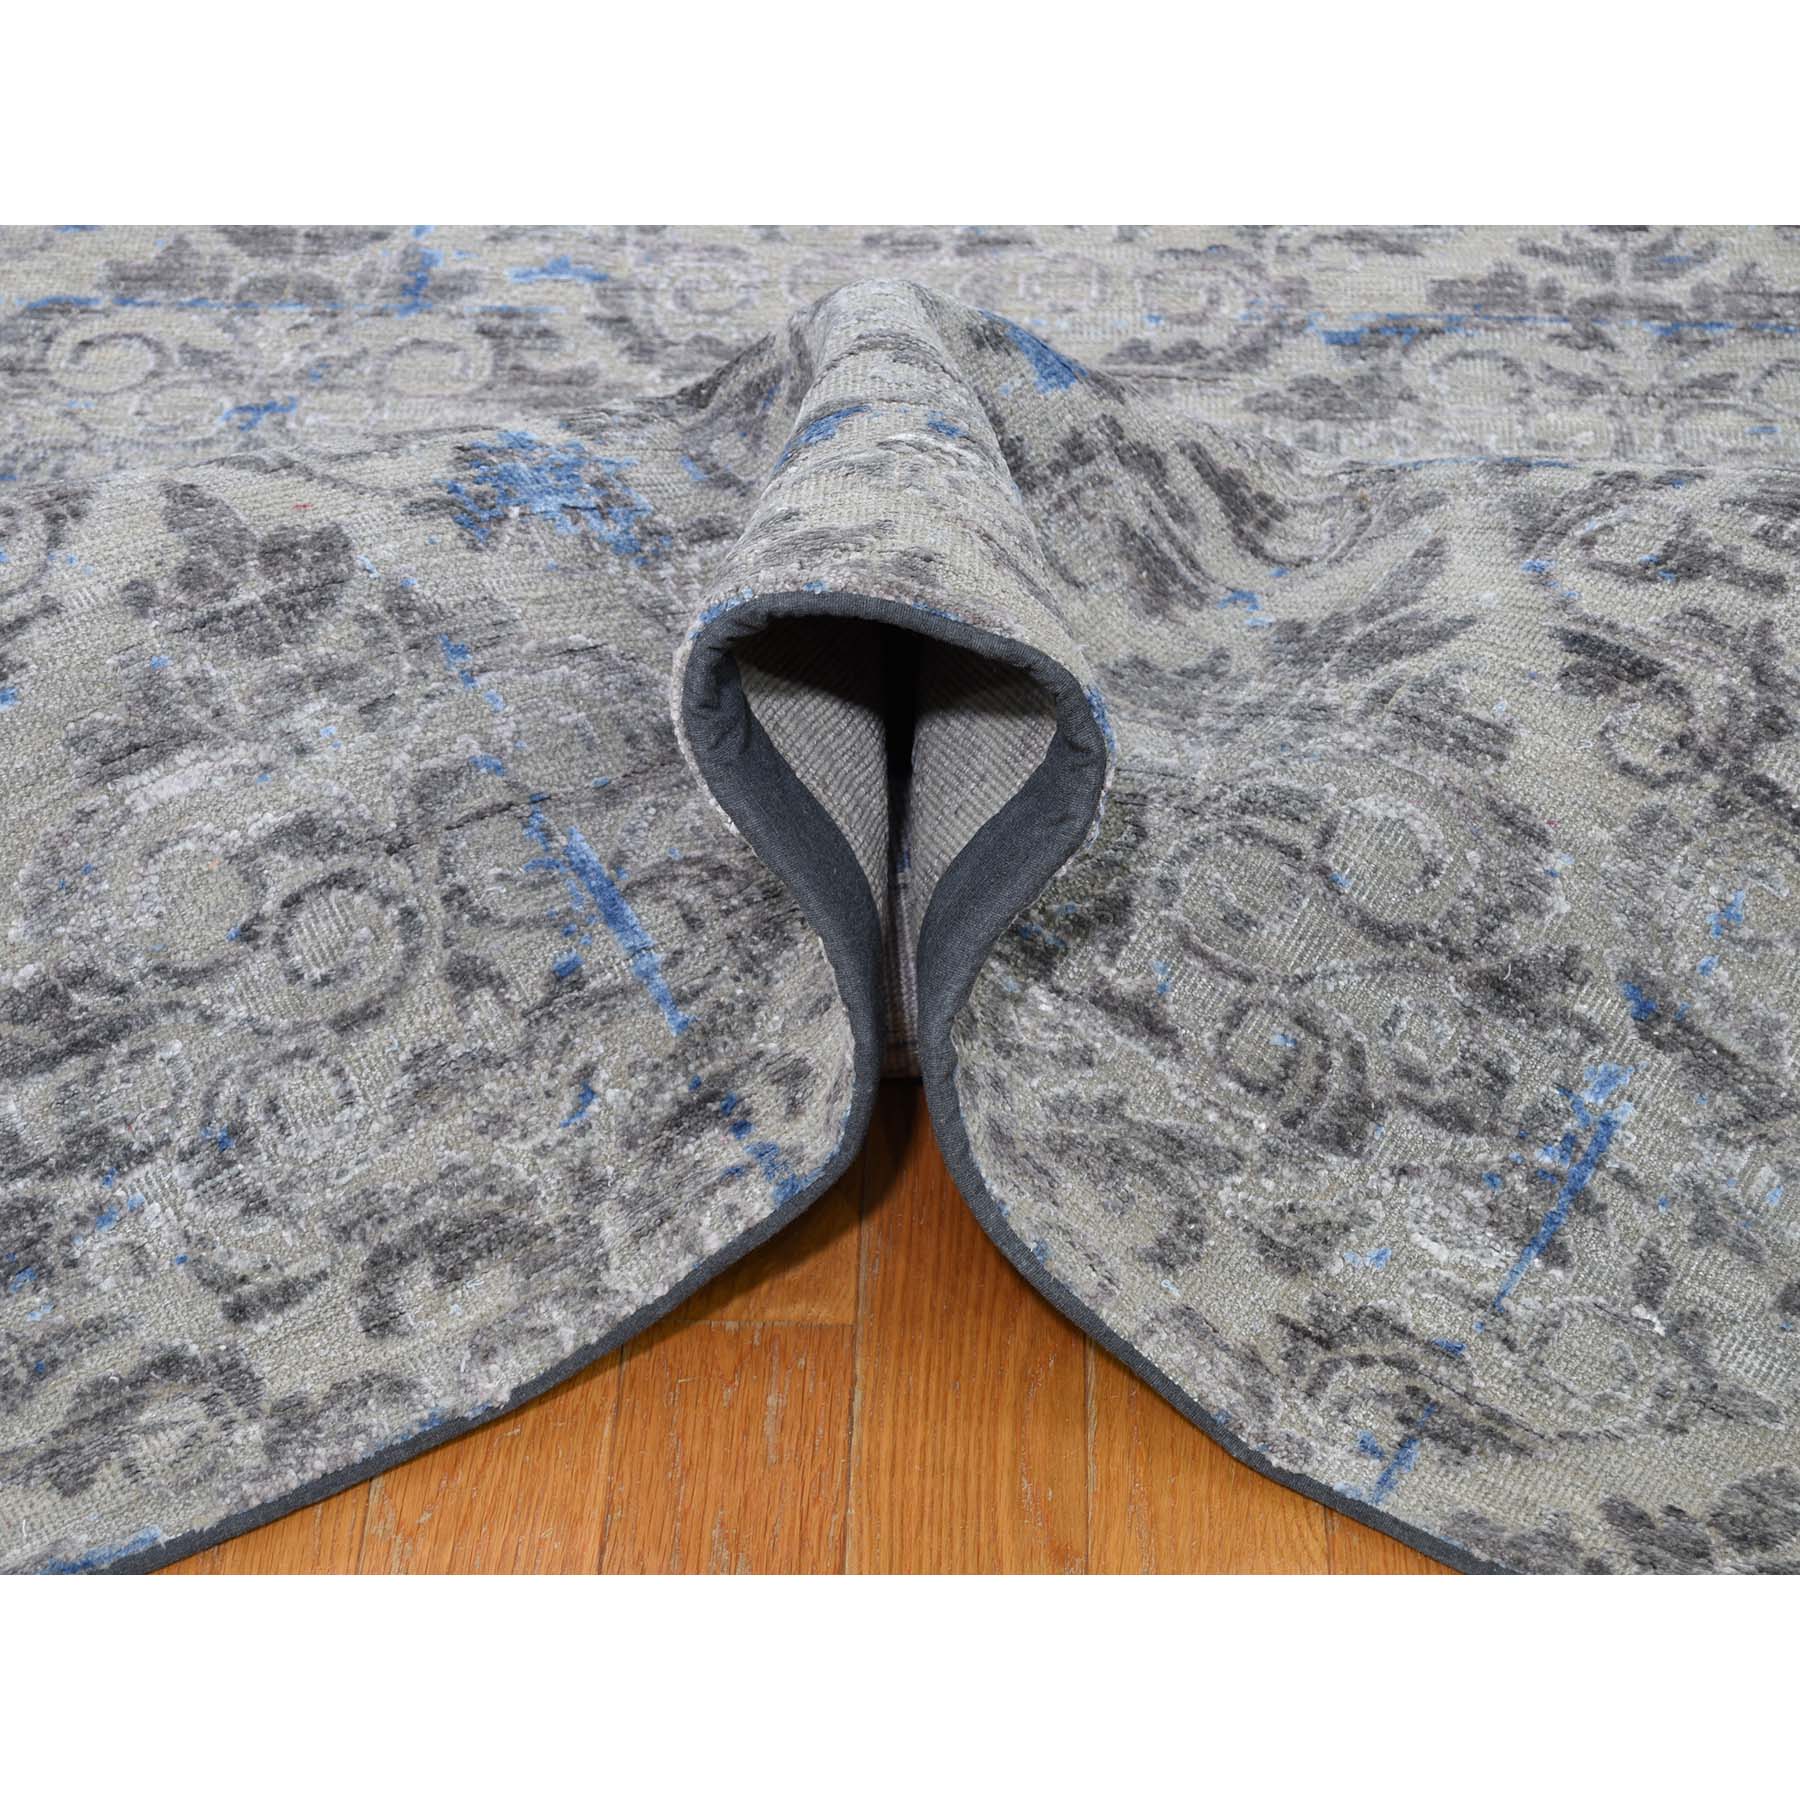 9'8"x13'6" Pure Silk With Textured Wool Trellis Garden Design Hand Woven Oriental Rug 